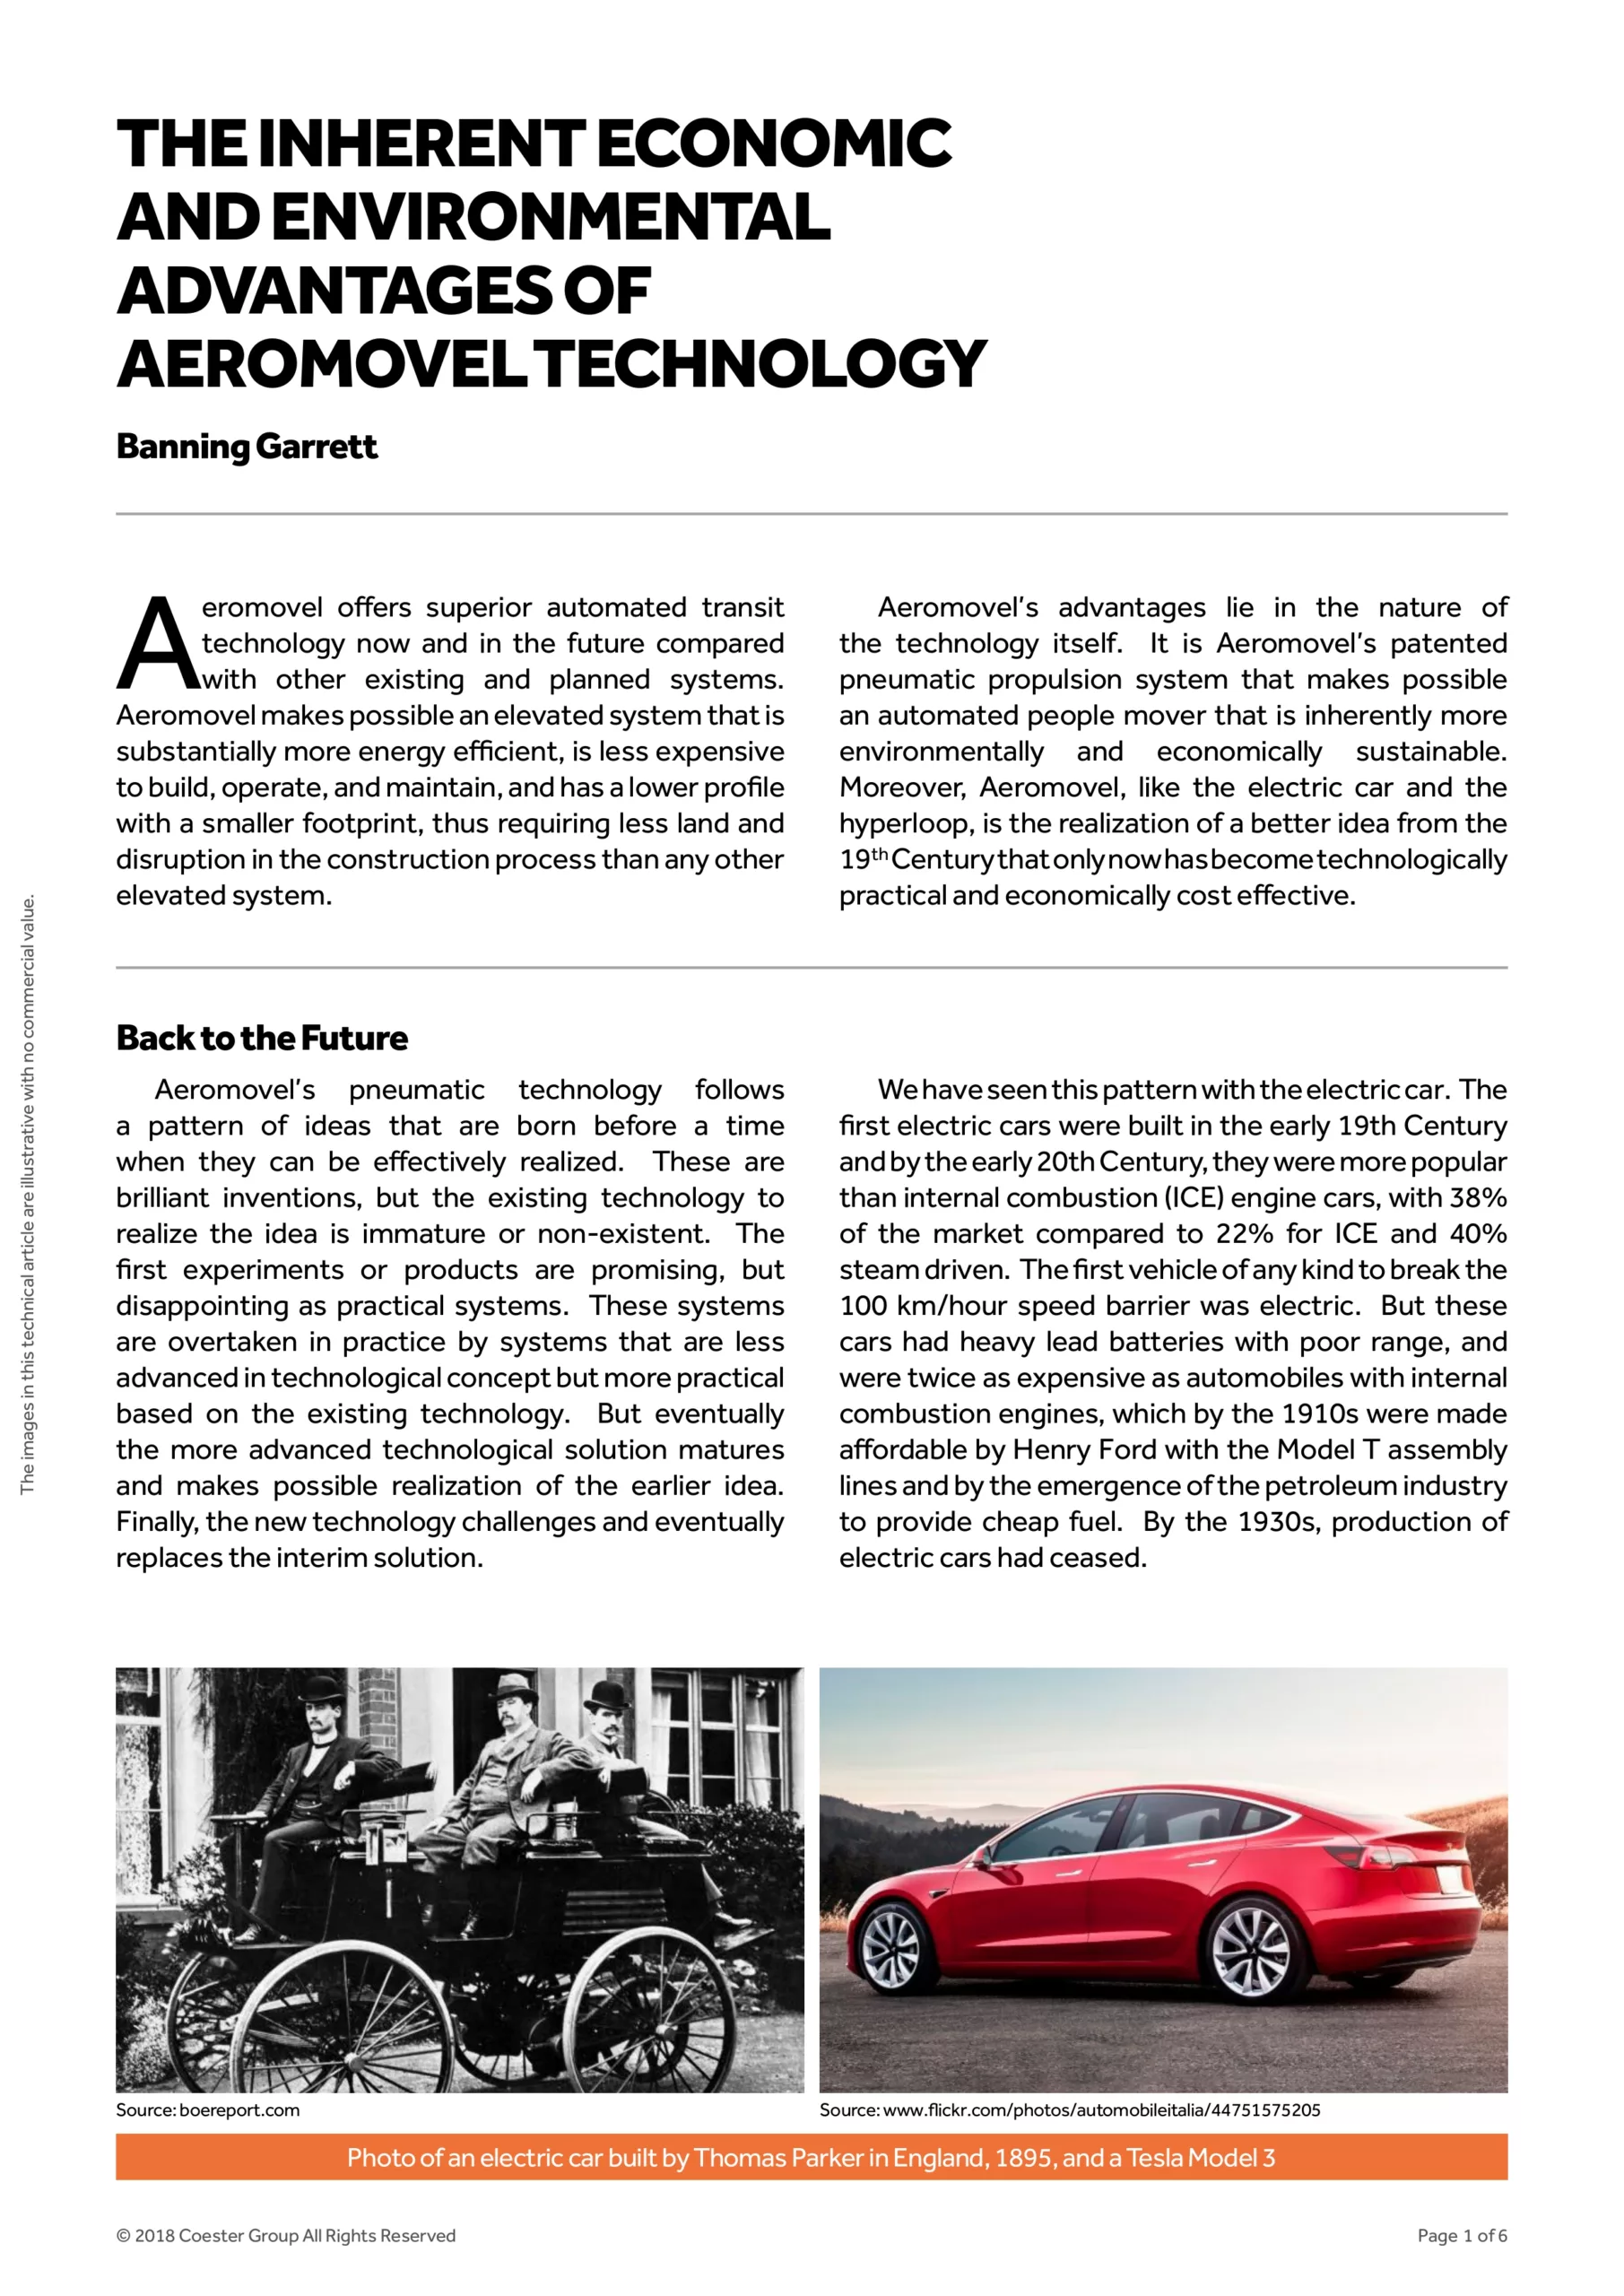 Vantagens econômicas e ambientais inerentes à tecnologia Aeromovel